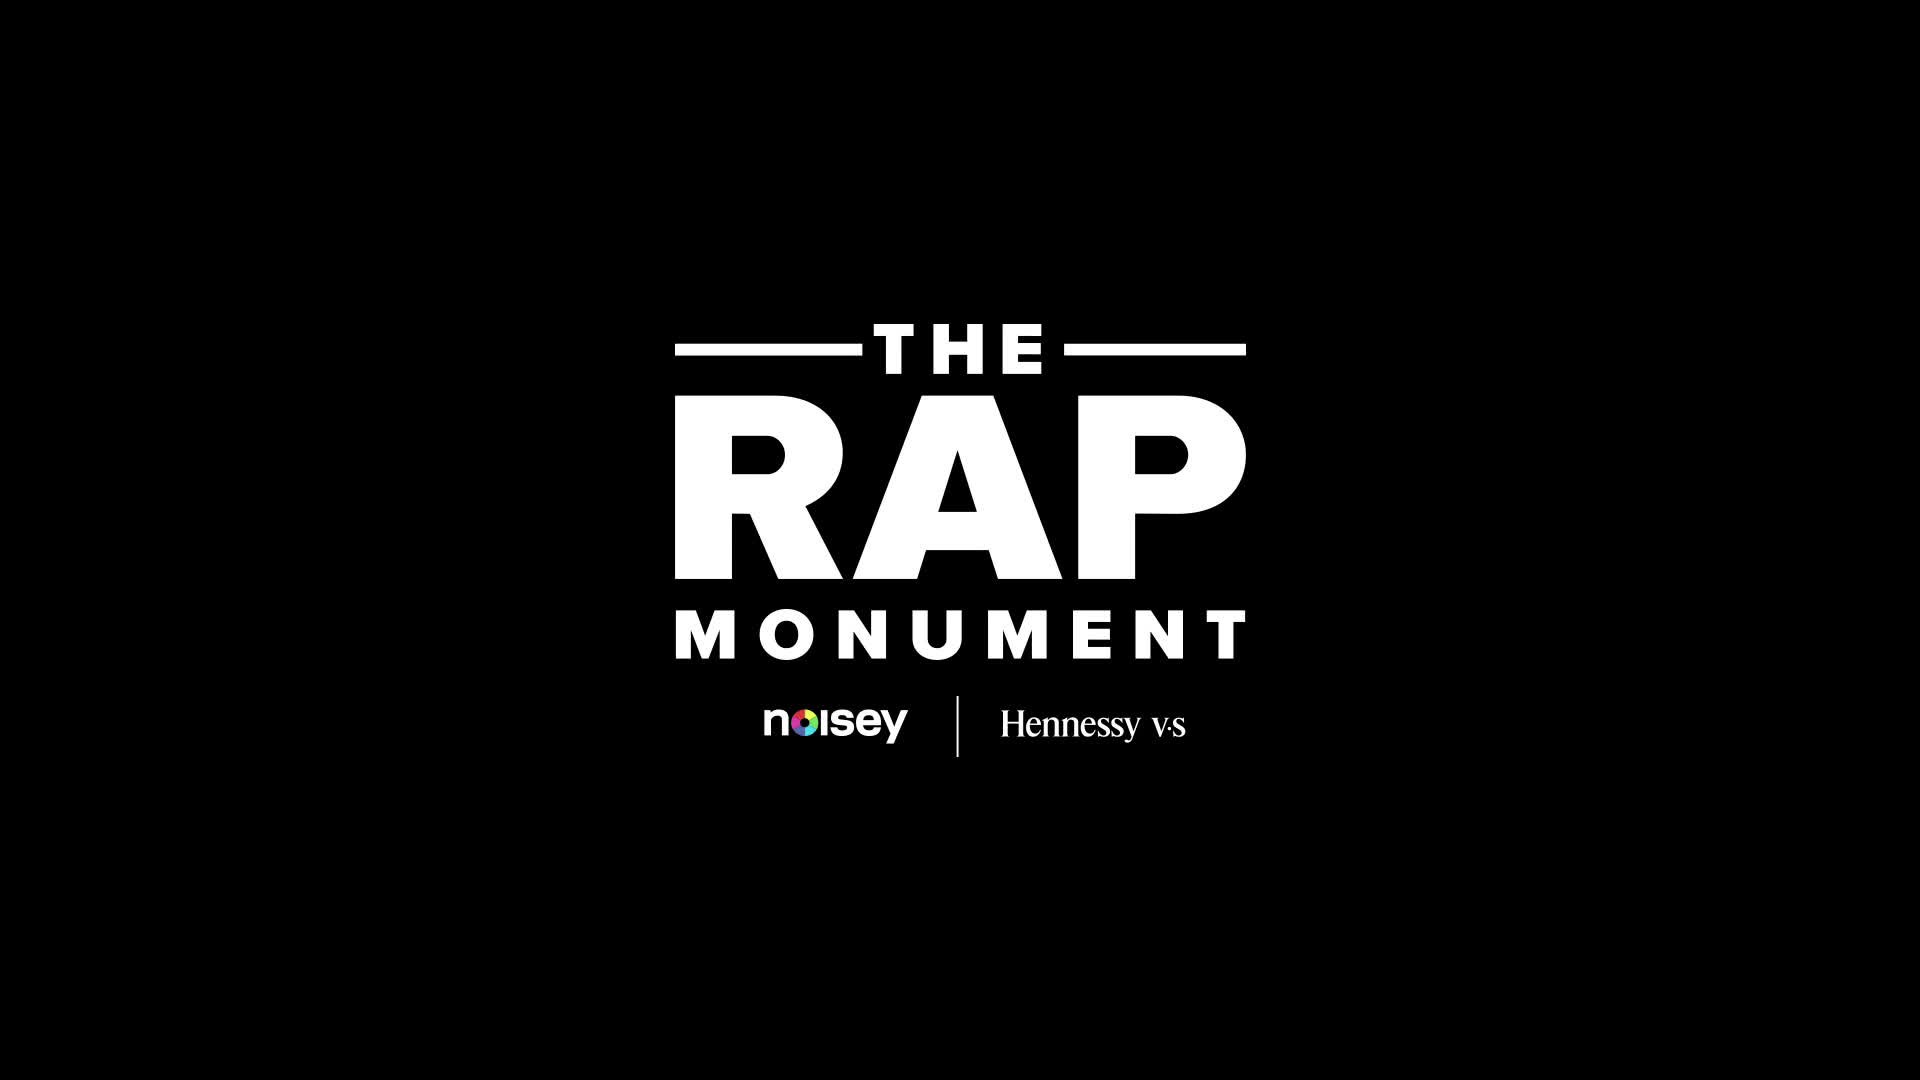 THE RAP MONUMENT